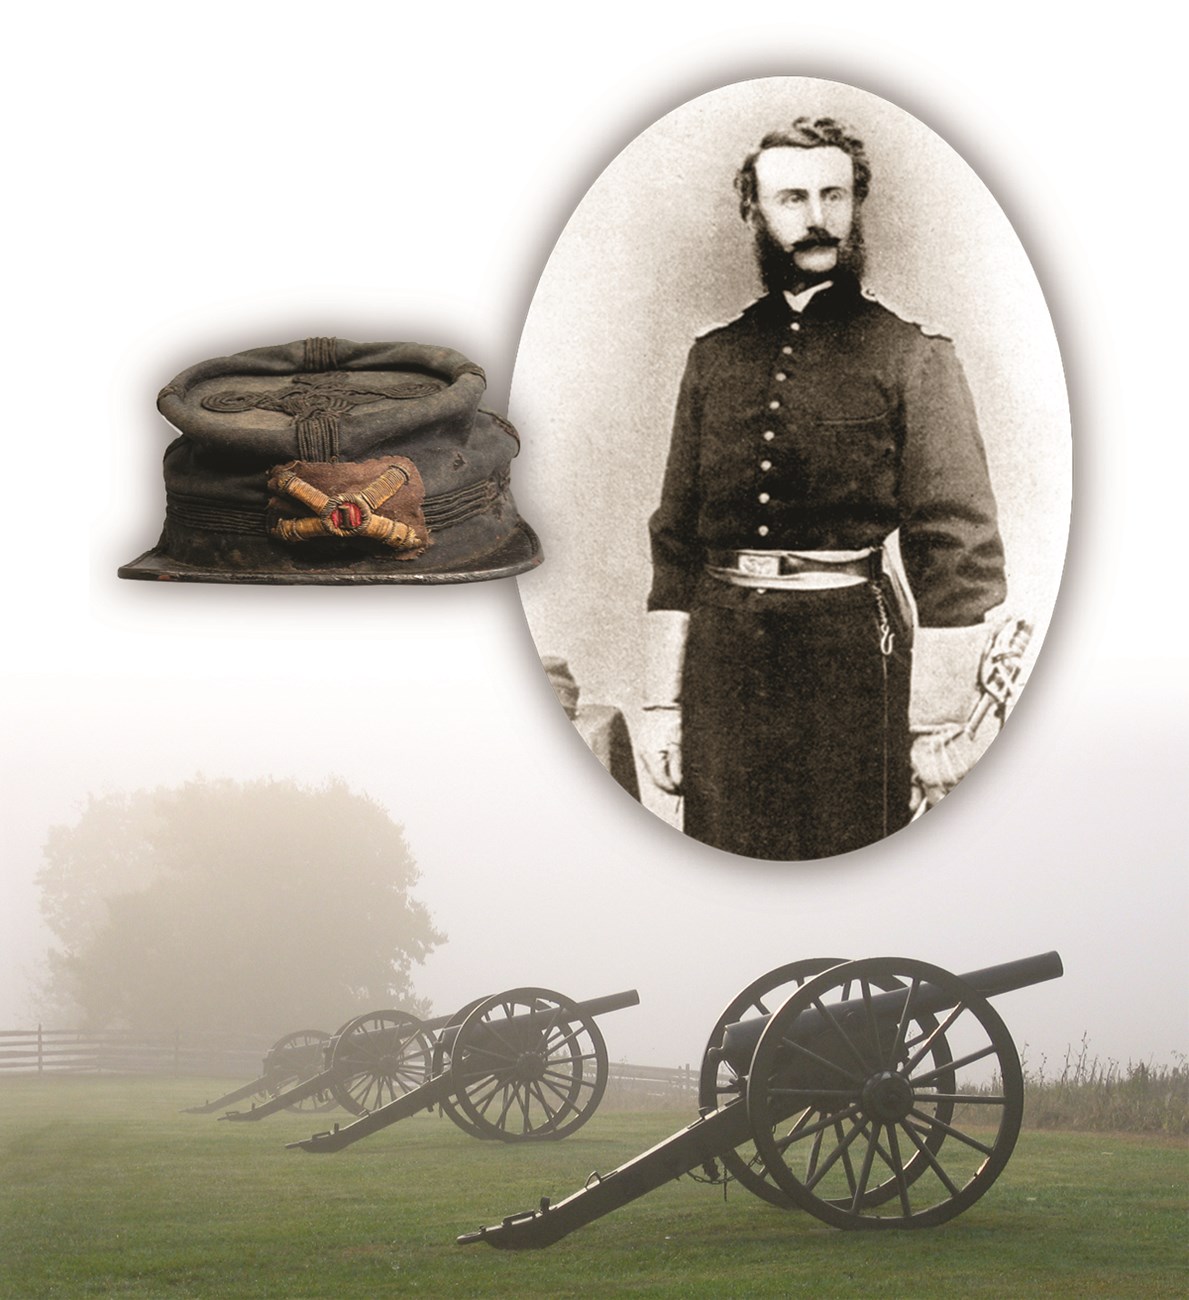 Captain John Tompkins portrait, hat and cannon